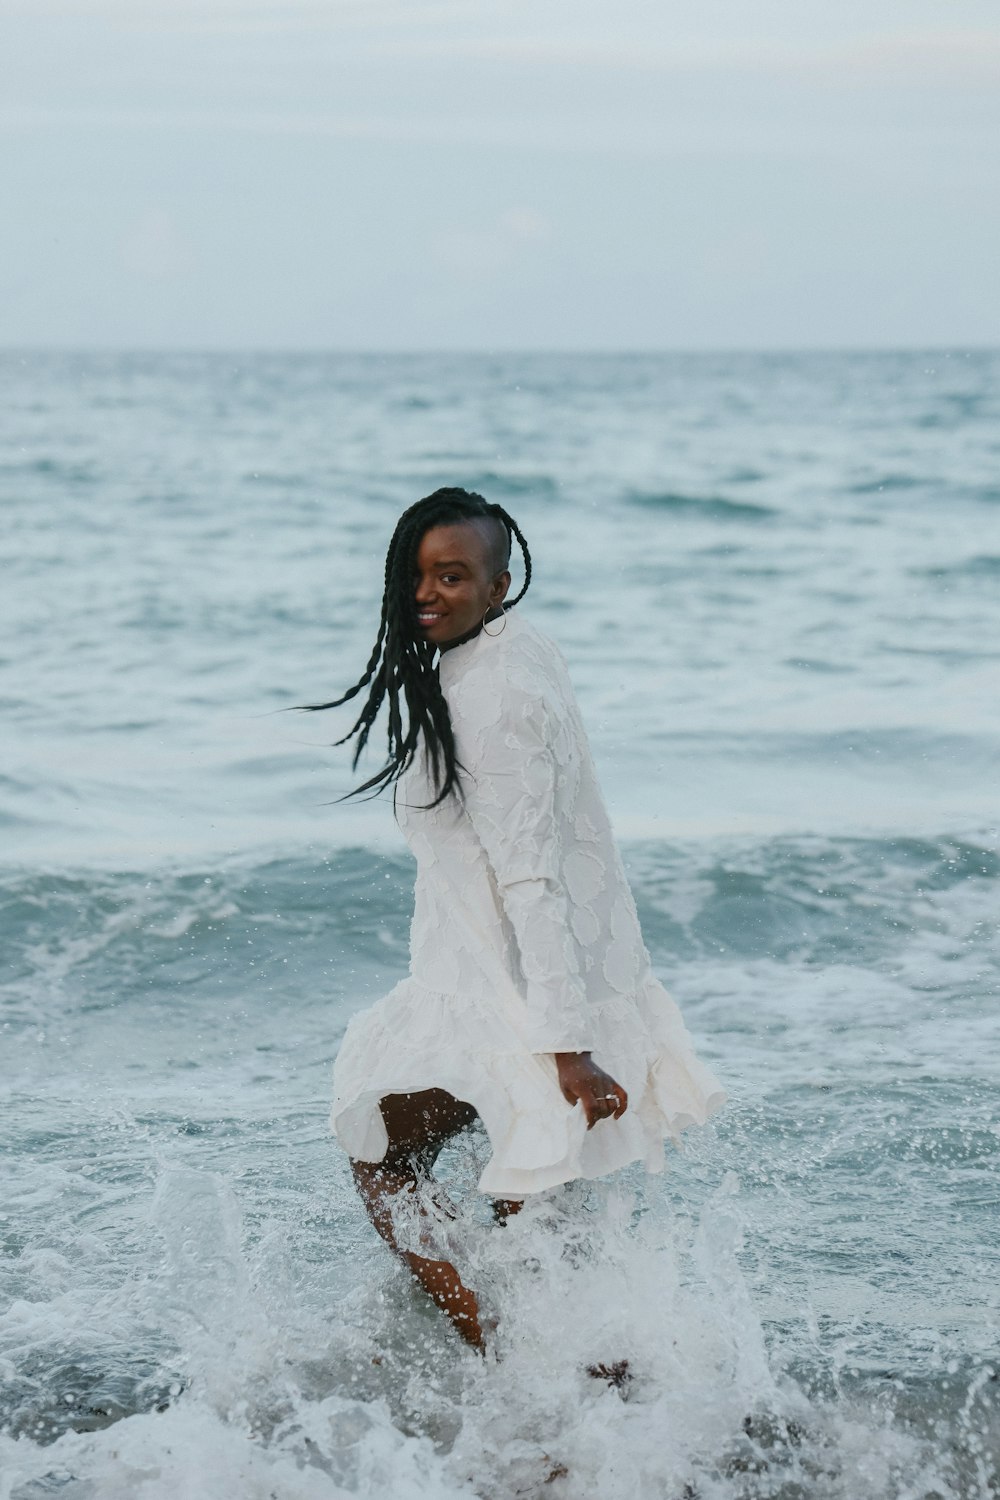 바다에 서 있는 하얀 드레스를 입은 여자